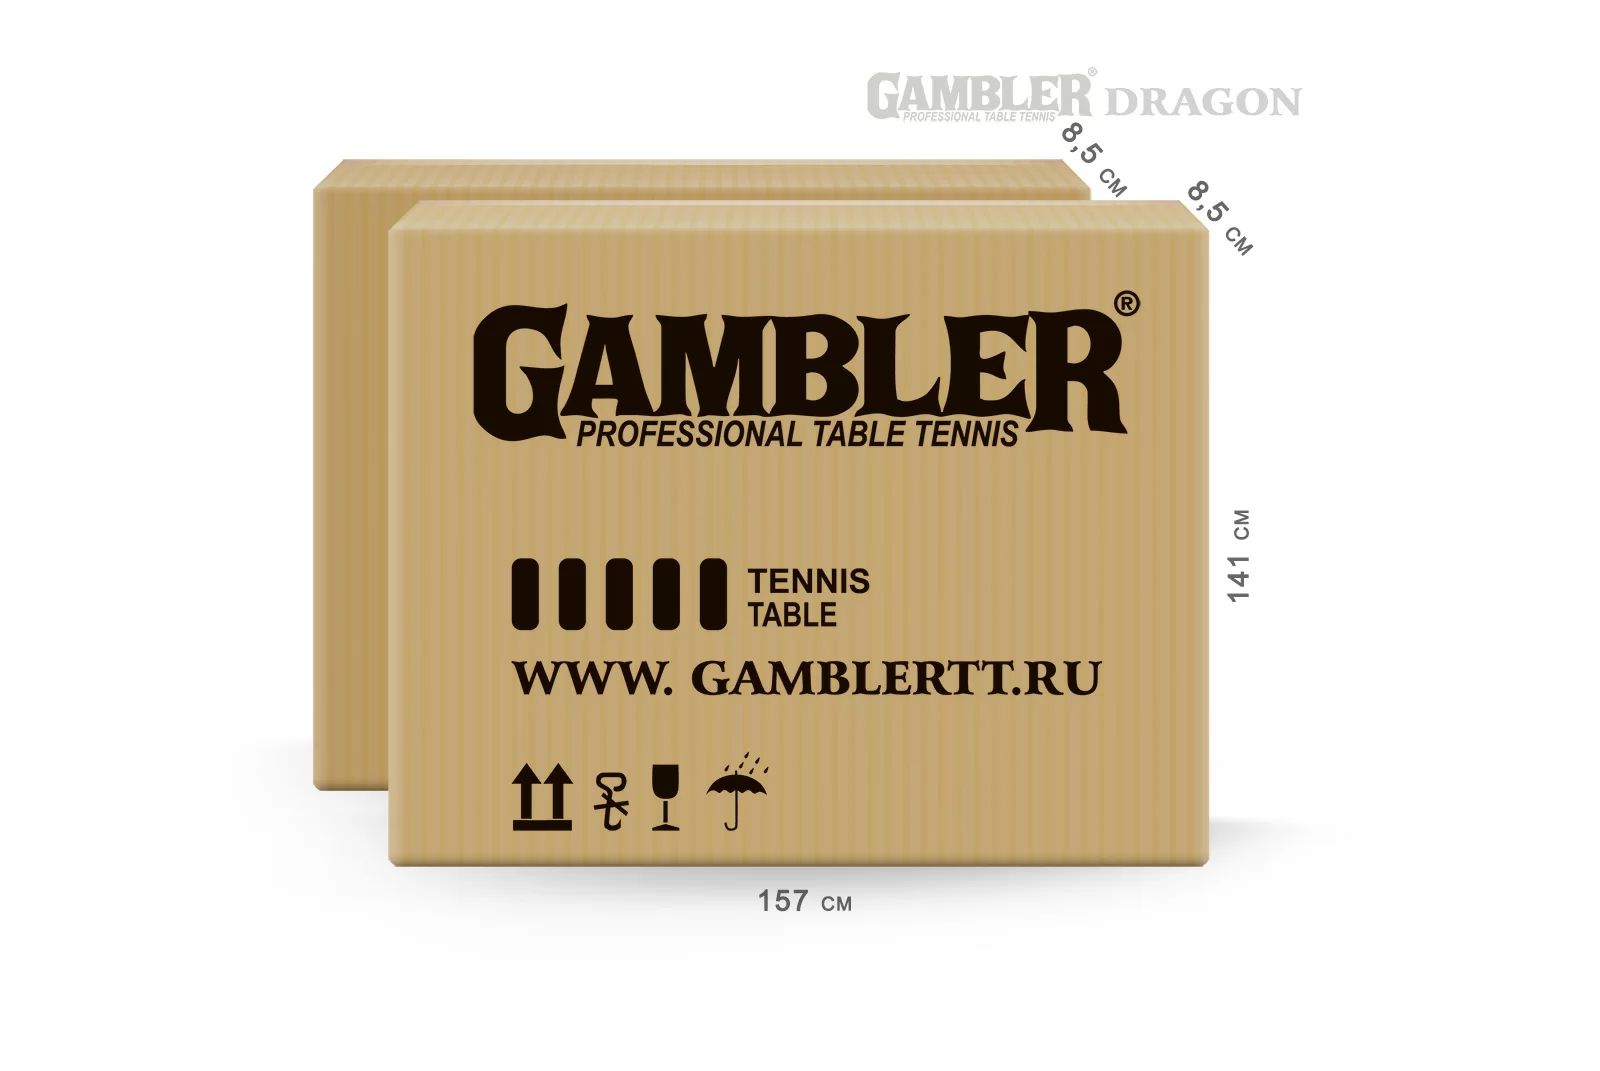 Реальное фото GAMBLER DRAGON BLUE от магазина СпортЕВ